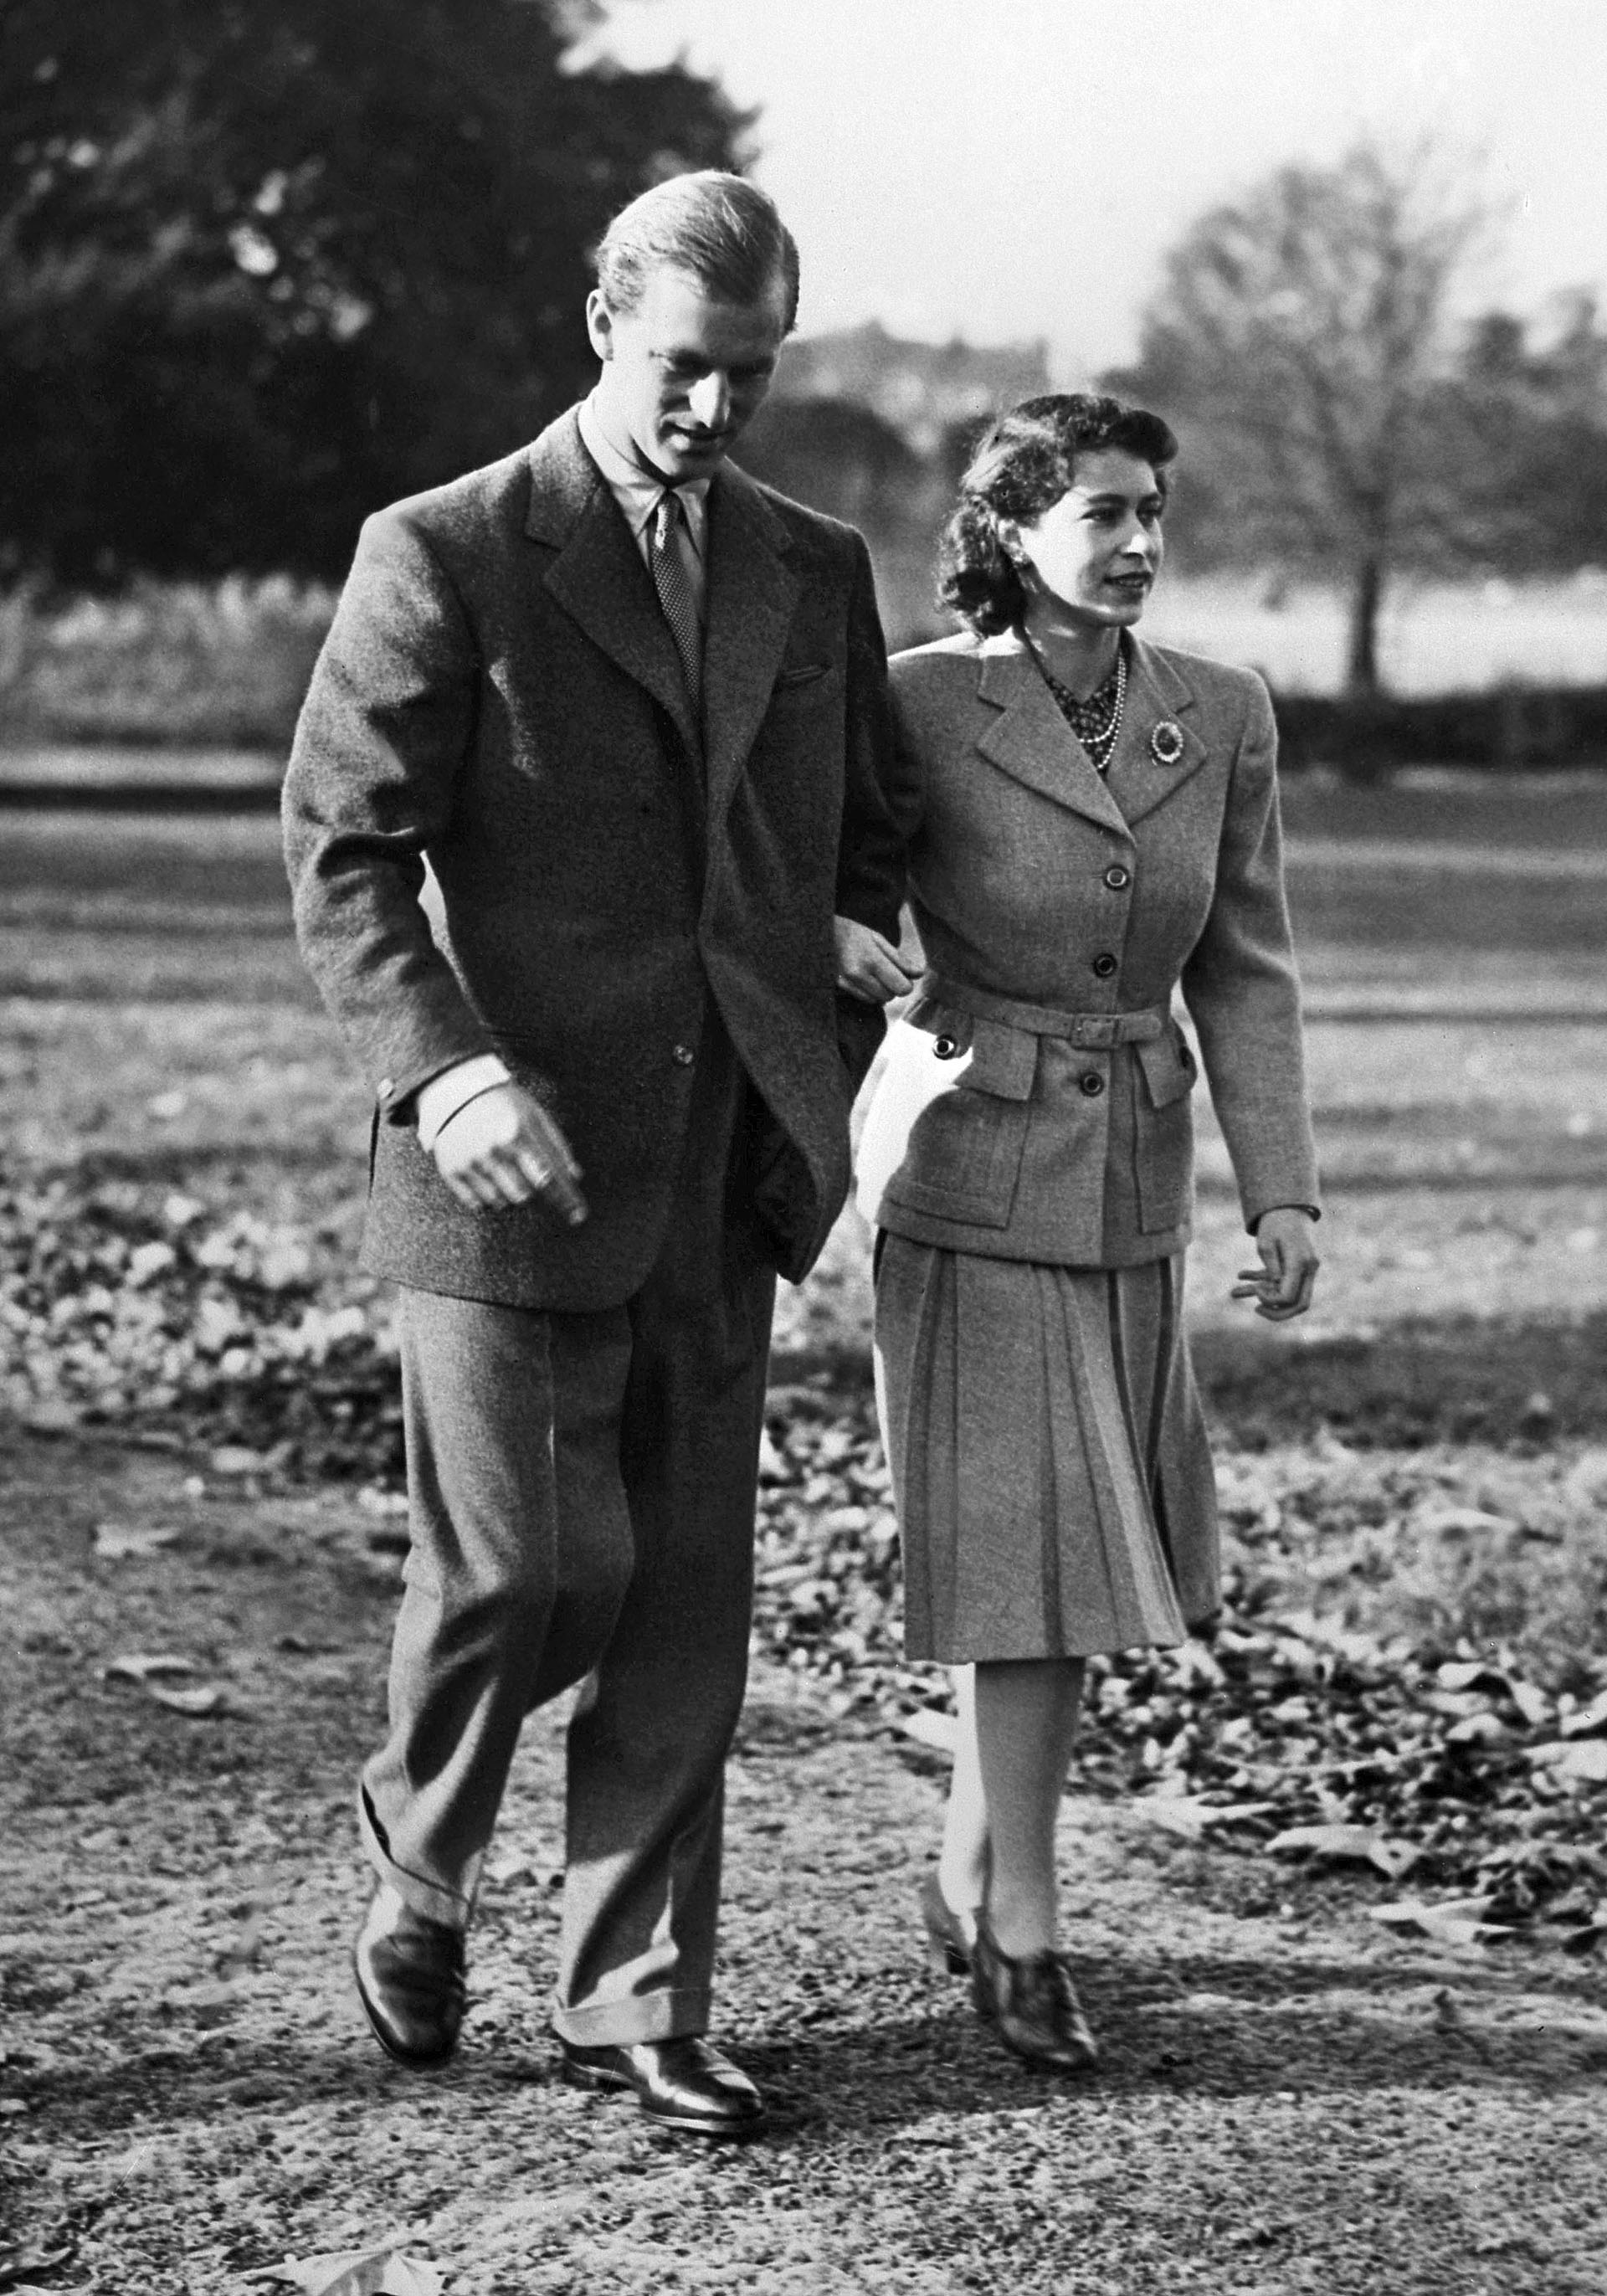 El 25 de noviembre de 1947, la princesa Isabel de Gran Bretaña y el príncipe Felipe de Gran Bretaña, duque de Edimburgo, camina durante su luna de miel en la finca de Broadlands, Hampshire